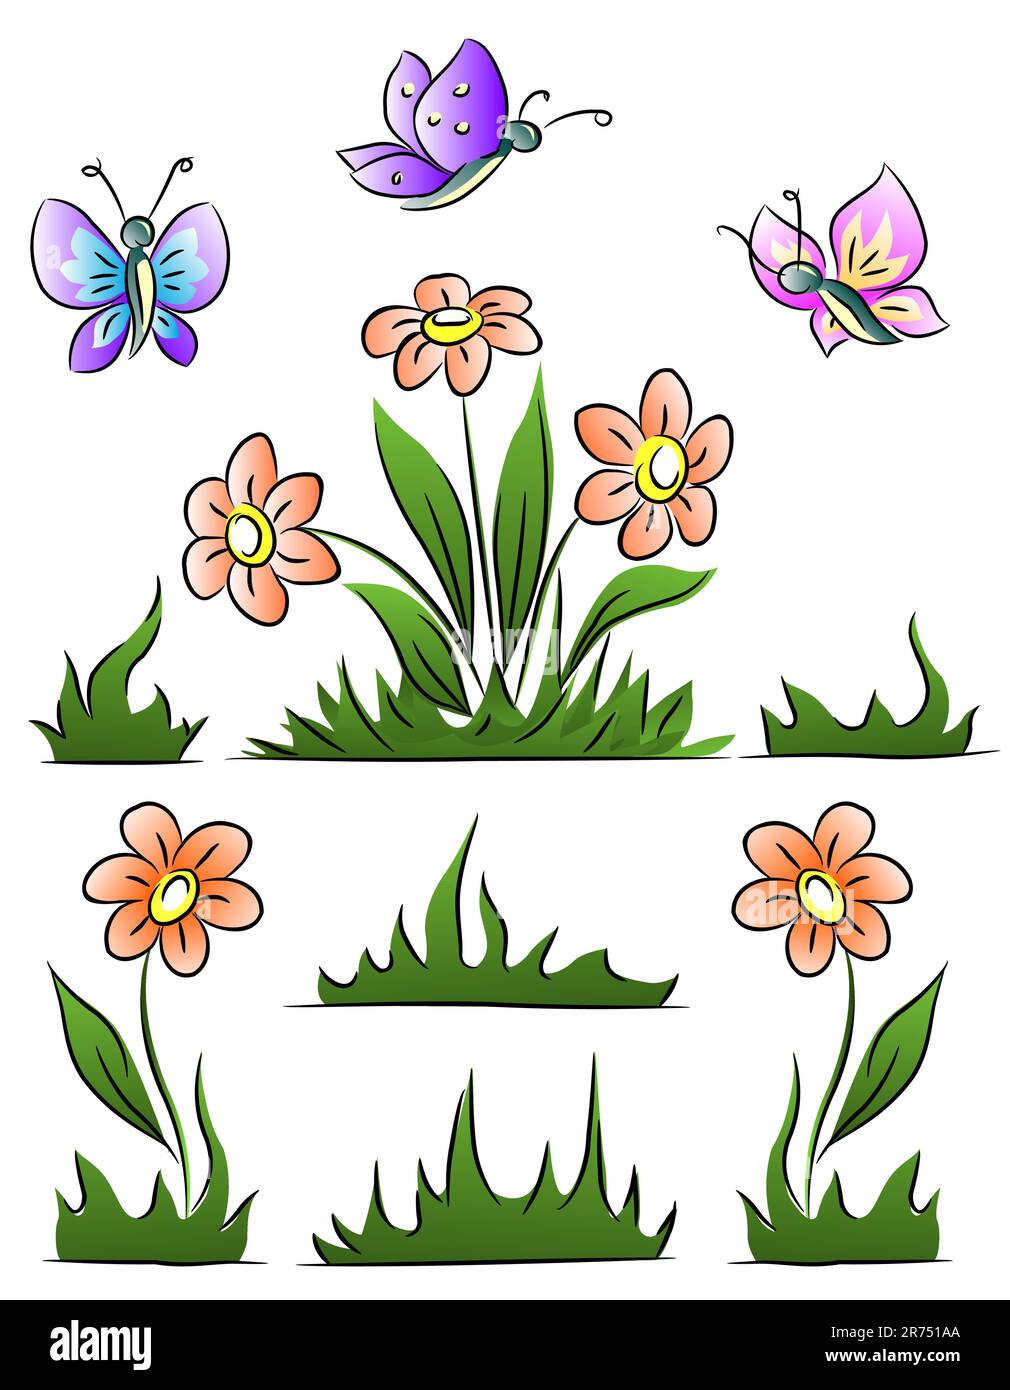 Vektordarstellung mit Blumengras und Schmetterlingen isoliert auf weißem Hintergrund Stock Vektor